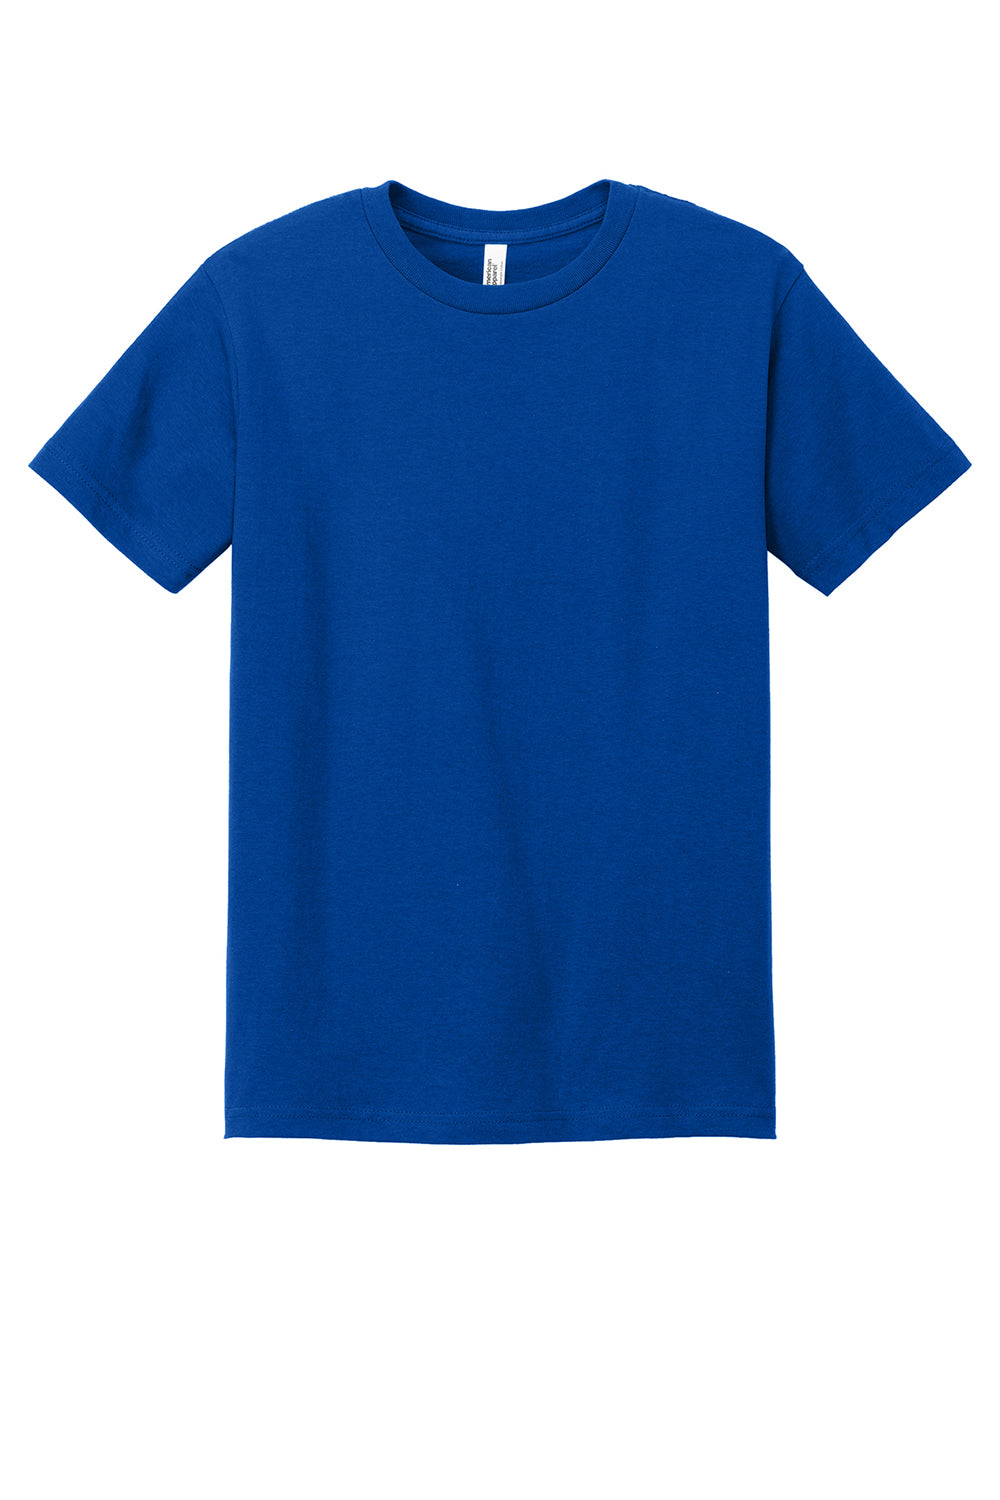 American Apparel 1301/AL1301 Mens Short Sleeve Crewneck T-Shirt Royal Blue Flat Front